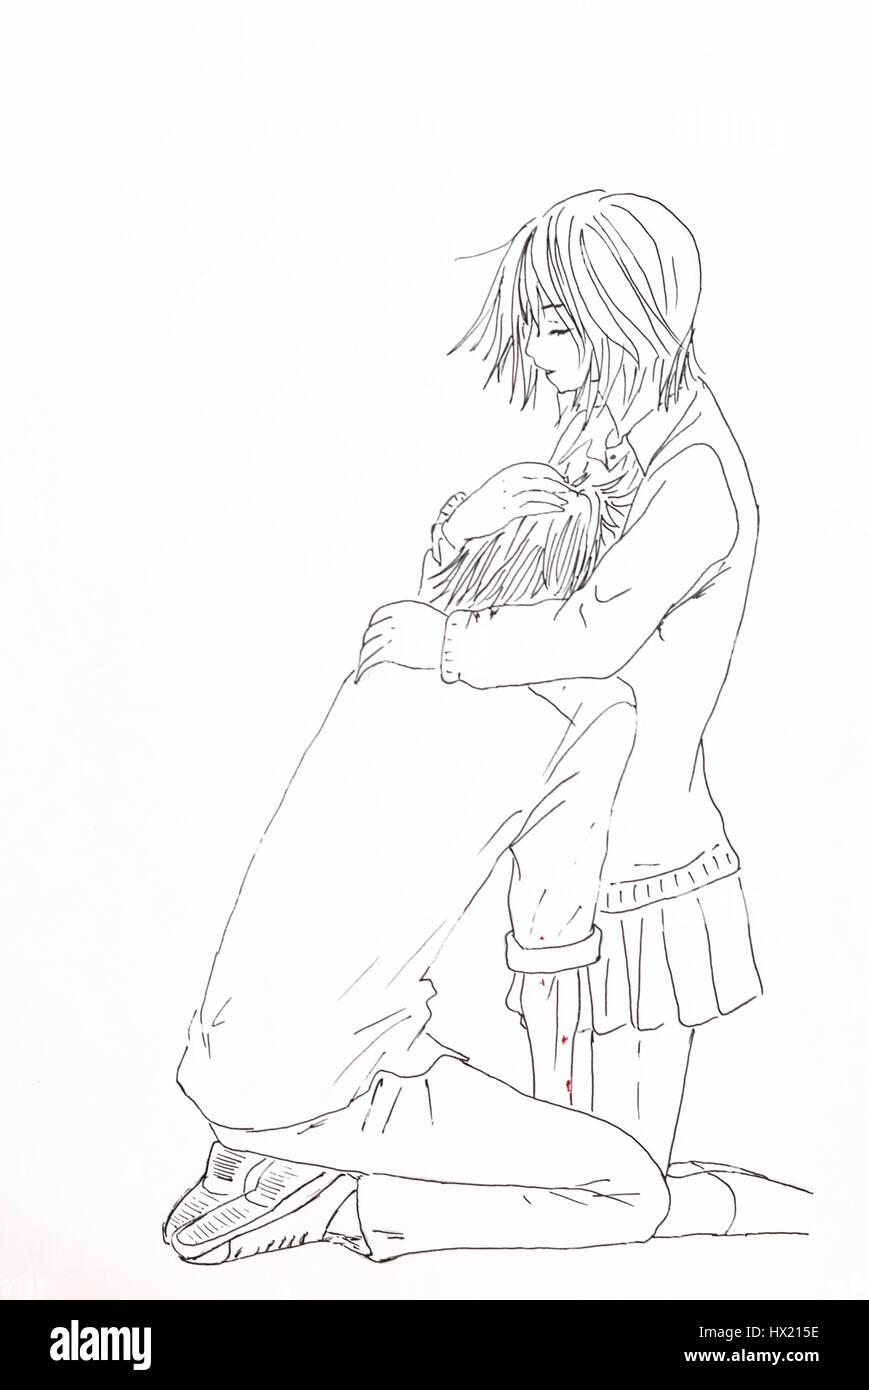 Girl hugging boy in white jacket anime artwork HD wallpaper  Wallpaper  Flare